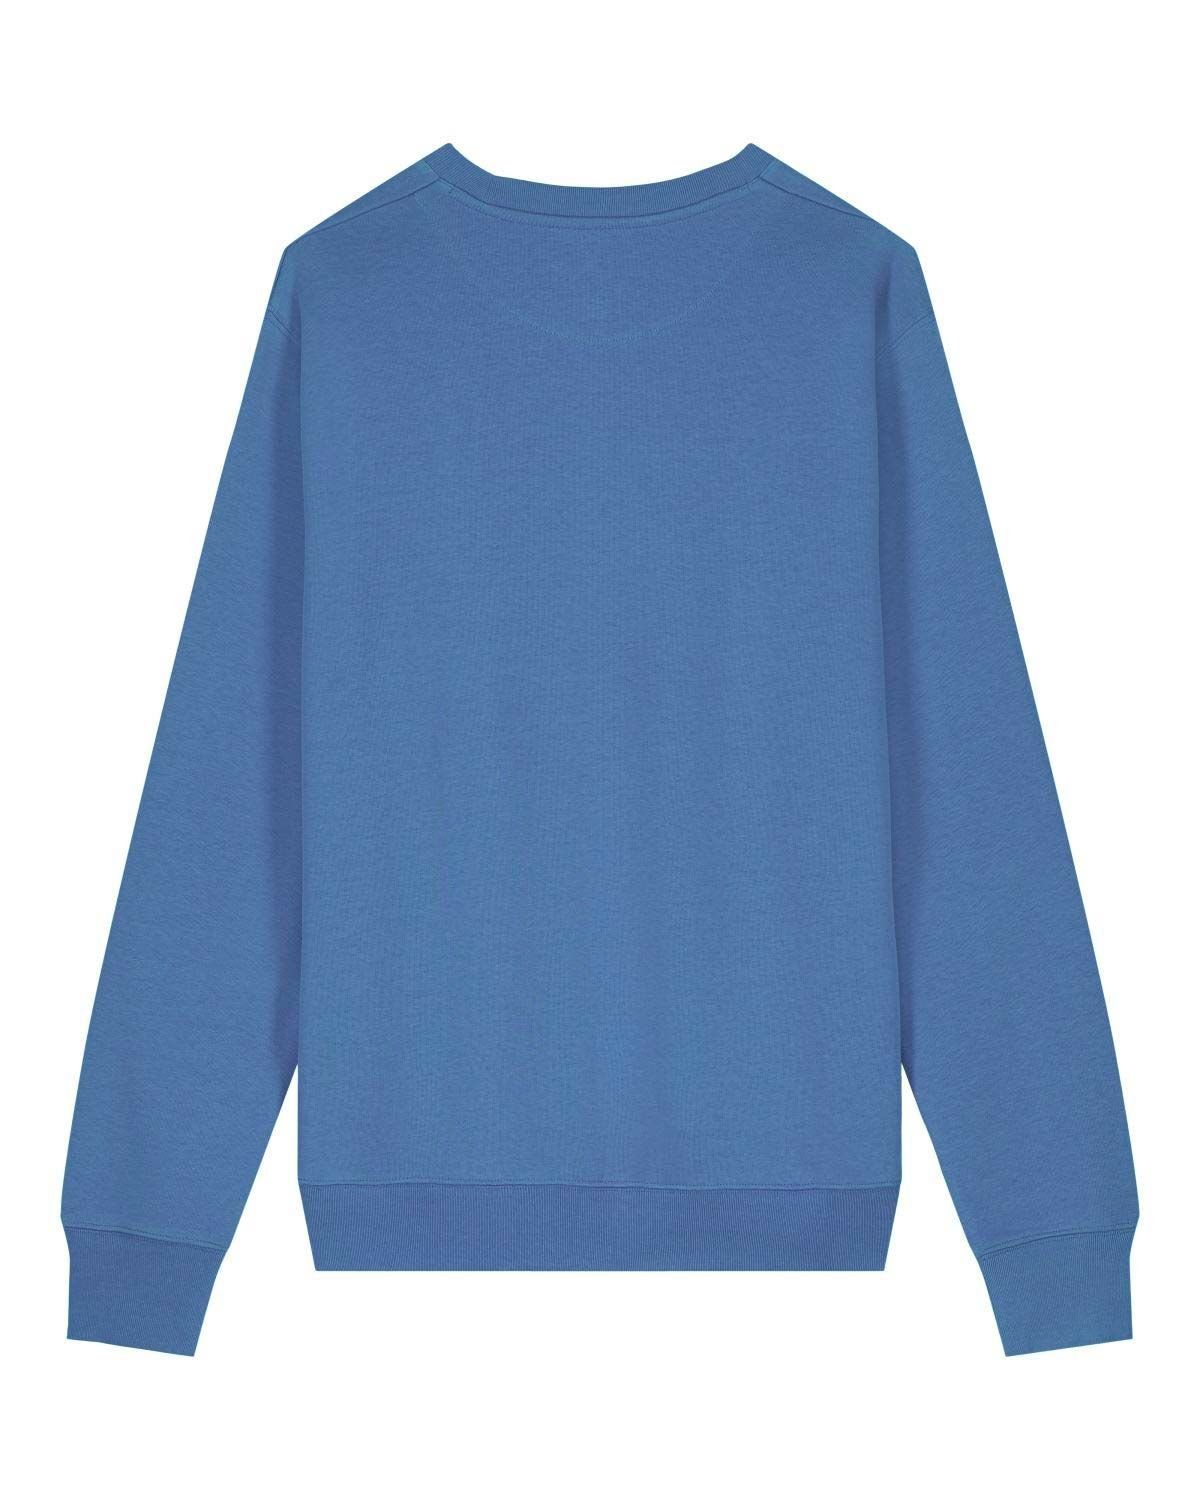 YTWOO Bright Sweatshirt Blue USW.08.BrB.2XL